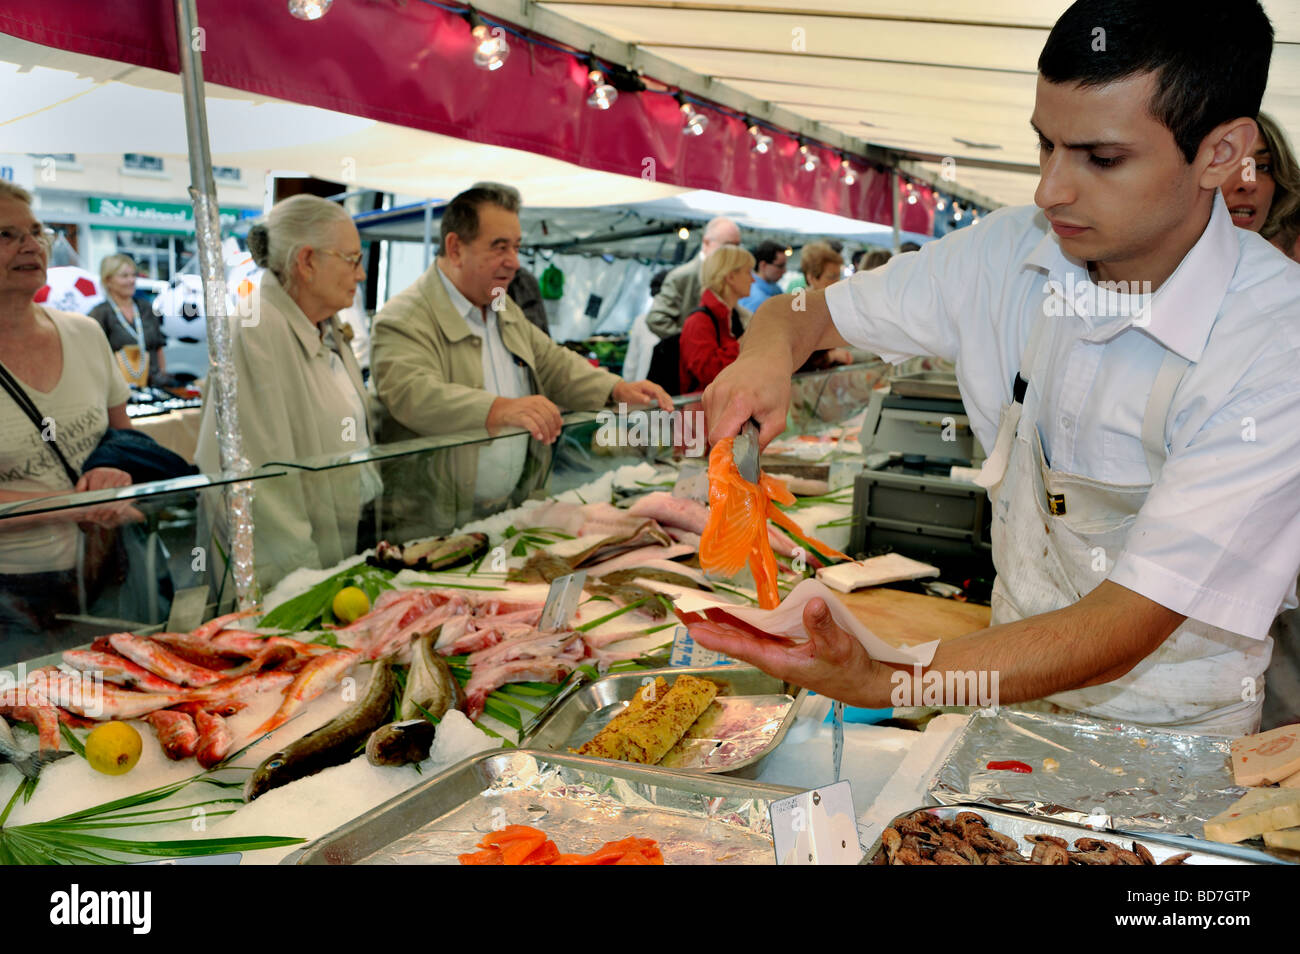 Paris Frankreich, Menschen, Shopping in außerhalb öffentlicher Lebensmittelmarkt, Stall, Display, frischen Fisch junge männliche Angestellte Portion Lachs, Straße Stockfoto